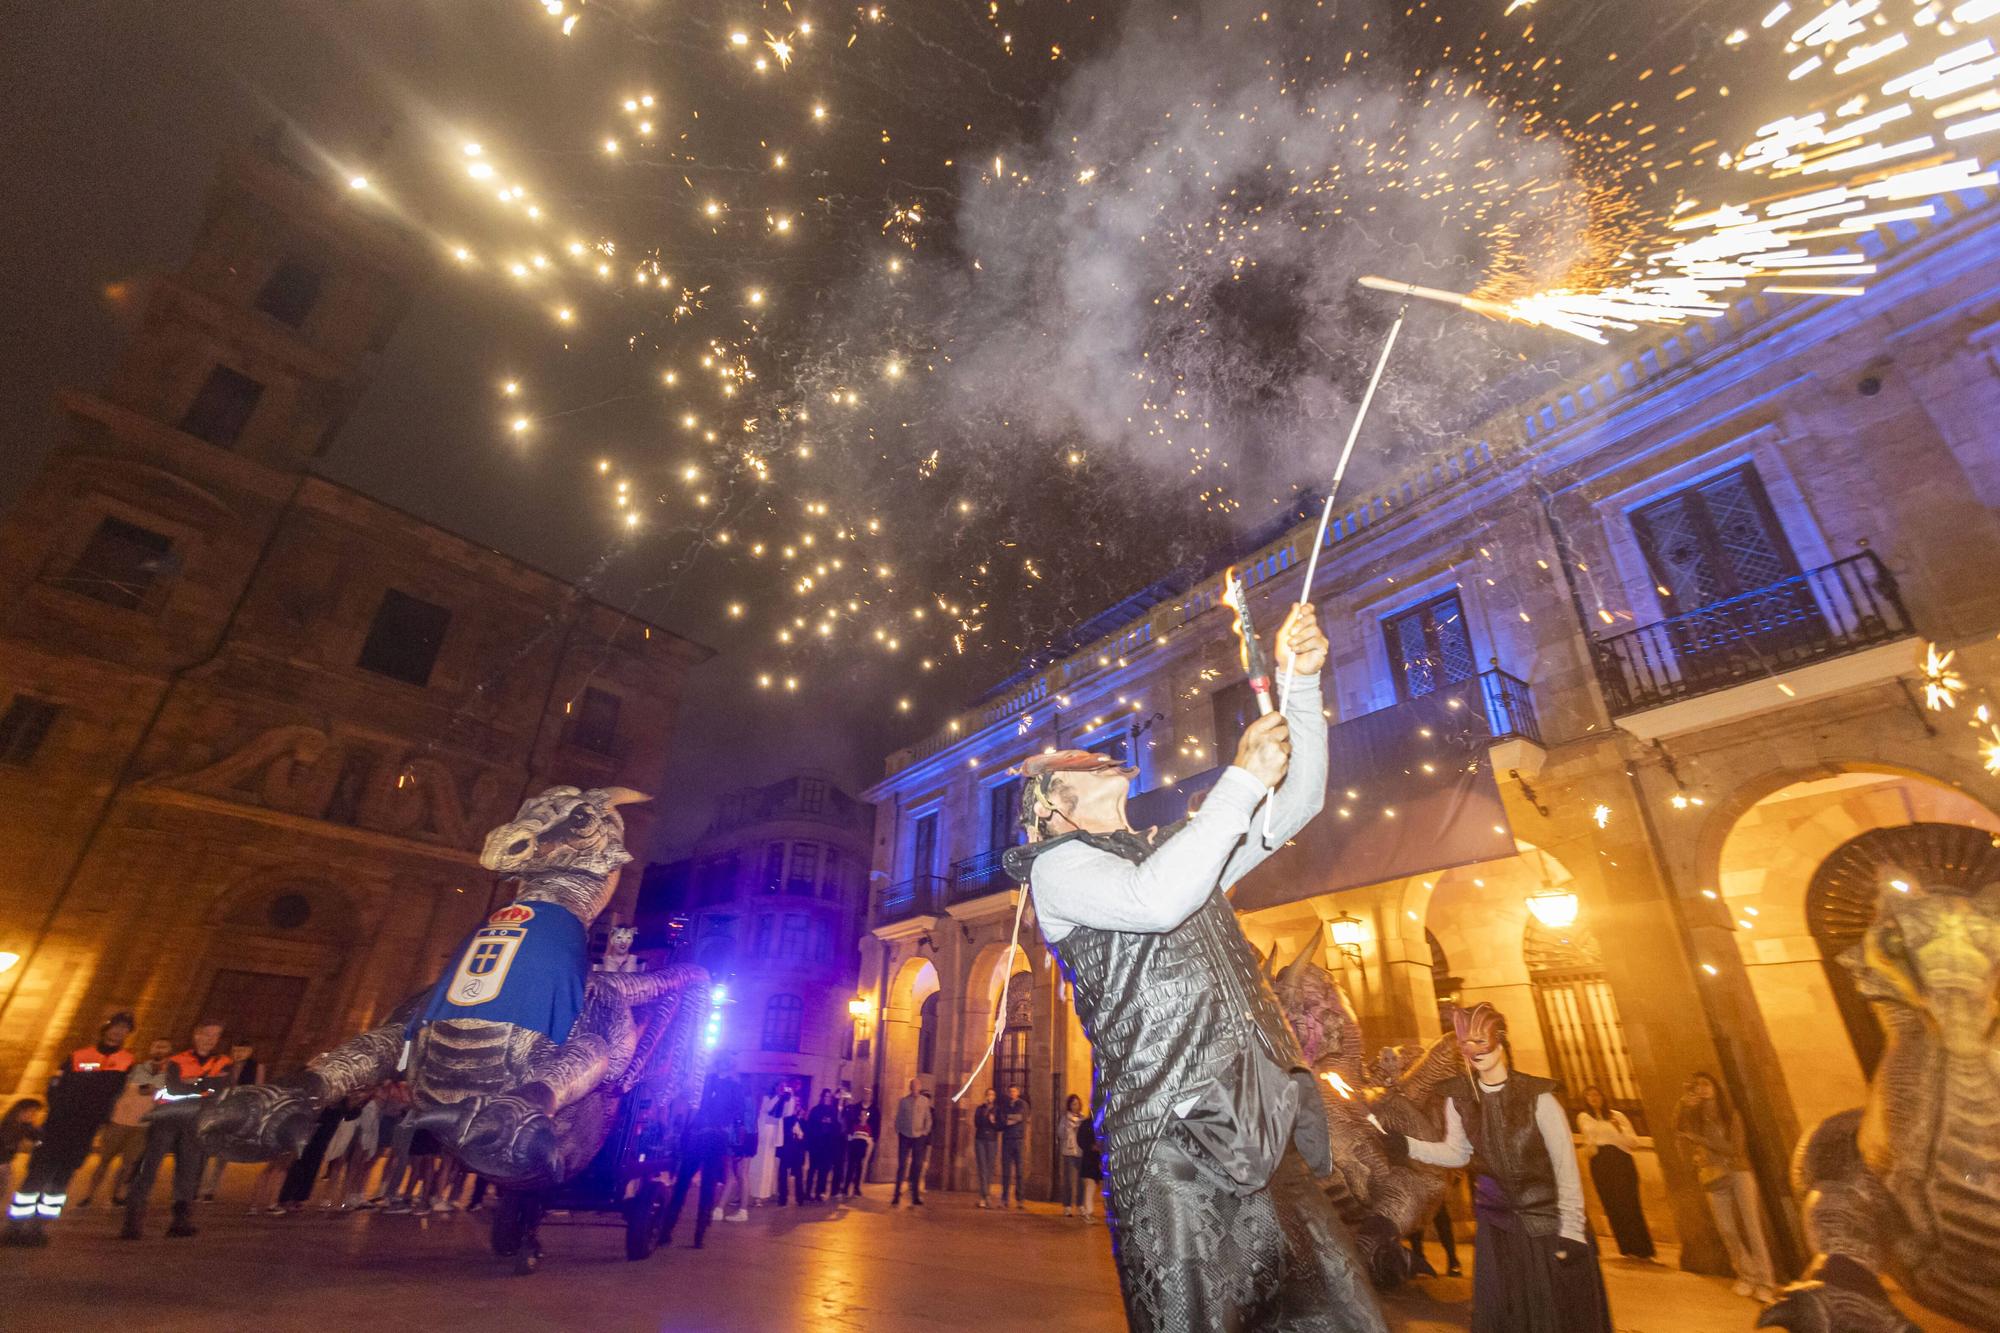 EN IMÁGENES: La noche de San Juan en Oviedo se llena de luz y criaturas mágicas